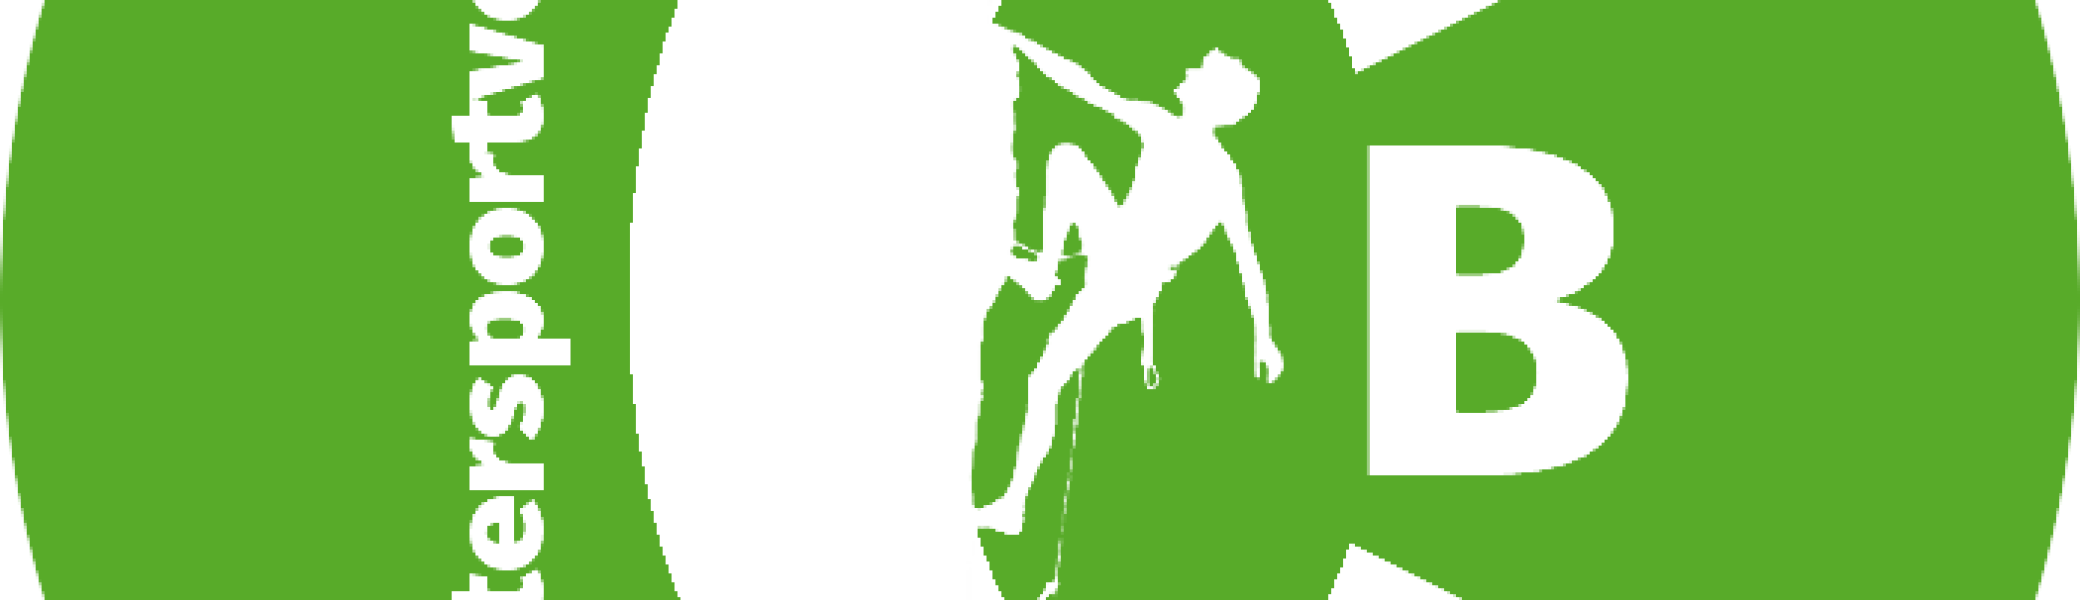 Logo des Klettersportverein, stilisierter Kletterer mit den Buchstaben CB | © Theodor Kubusch